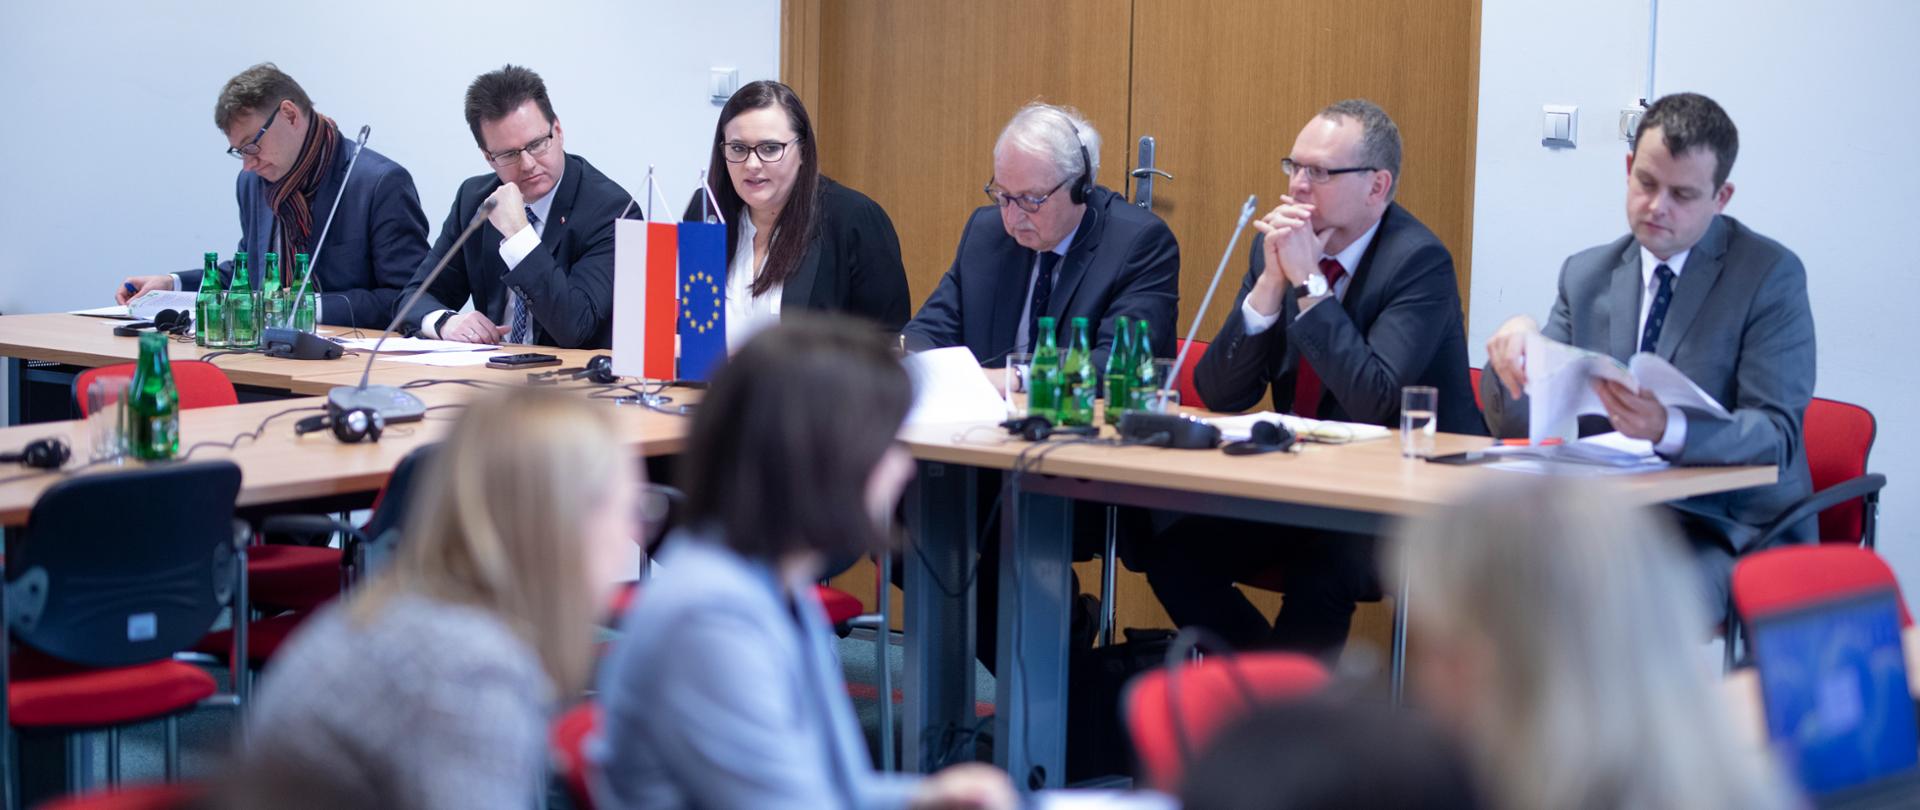 Zdjęcie sali, w której siedzą osoby wśród nich między innymi minister Jarosińska-Jedynak, minister Bittel, dyrektor Orliński i Matthias Ruete. Osoby siedzą przy stole, na którym na proporczykach stoi flaga Polski i Unii Europejskiej. 